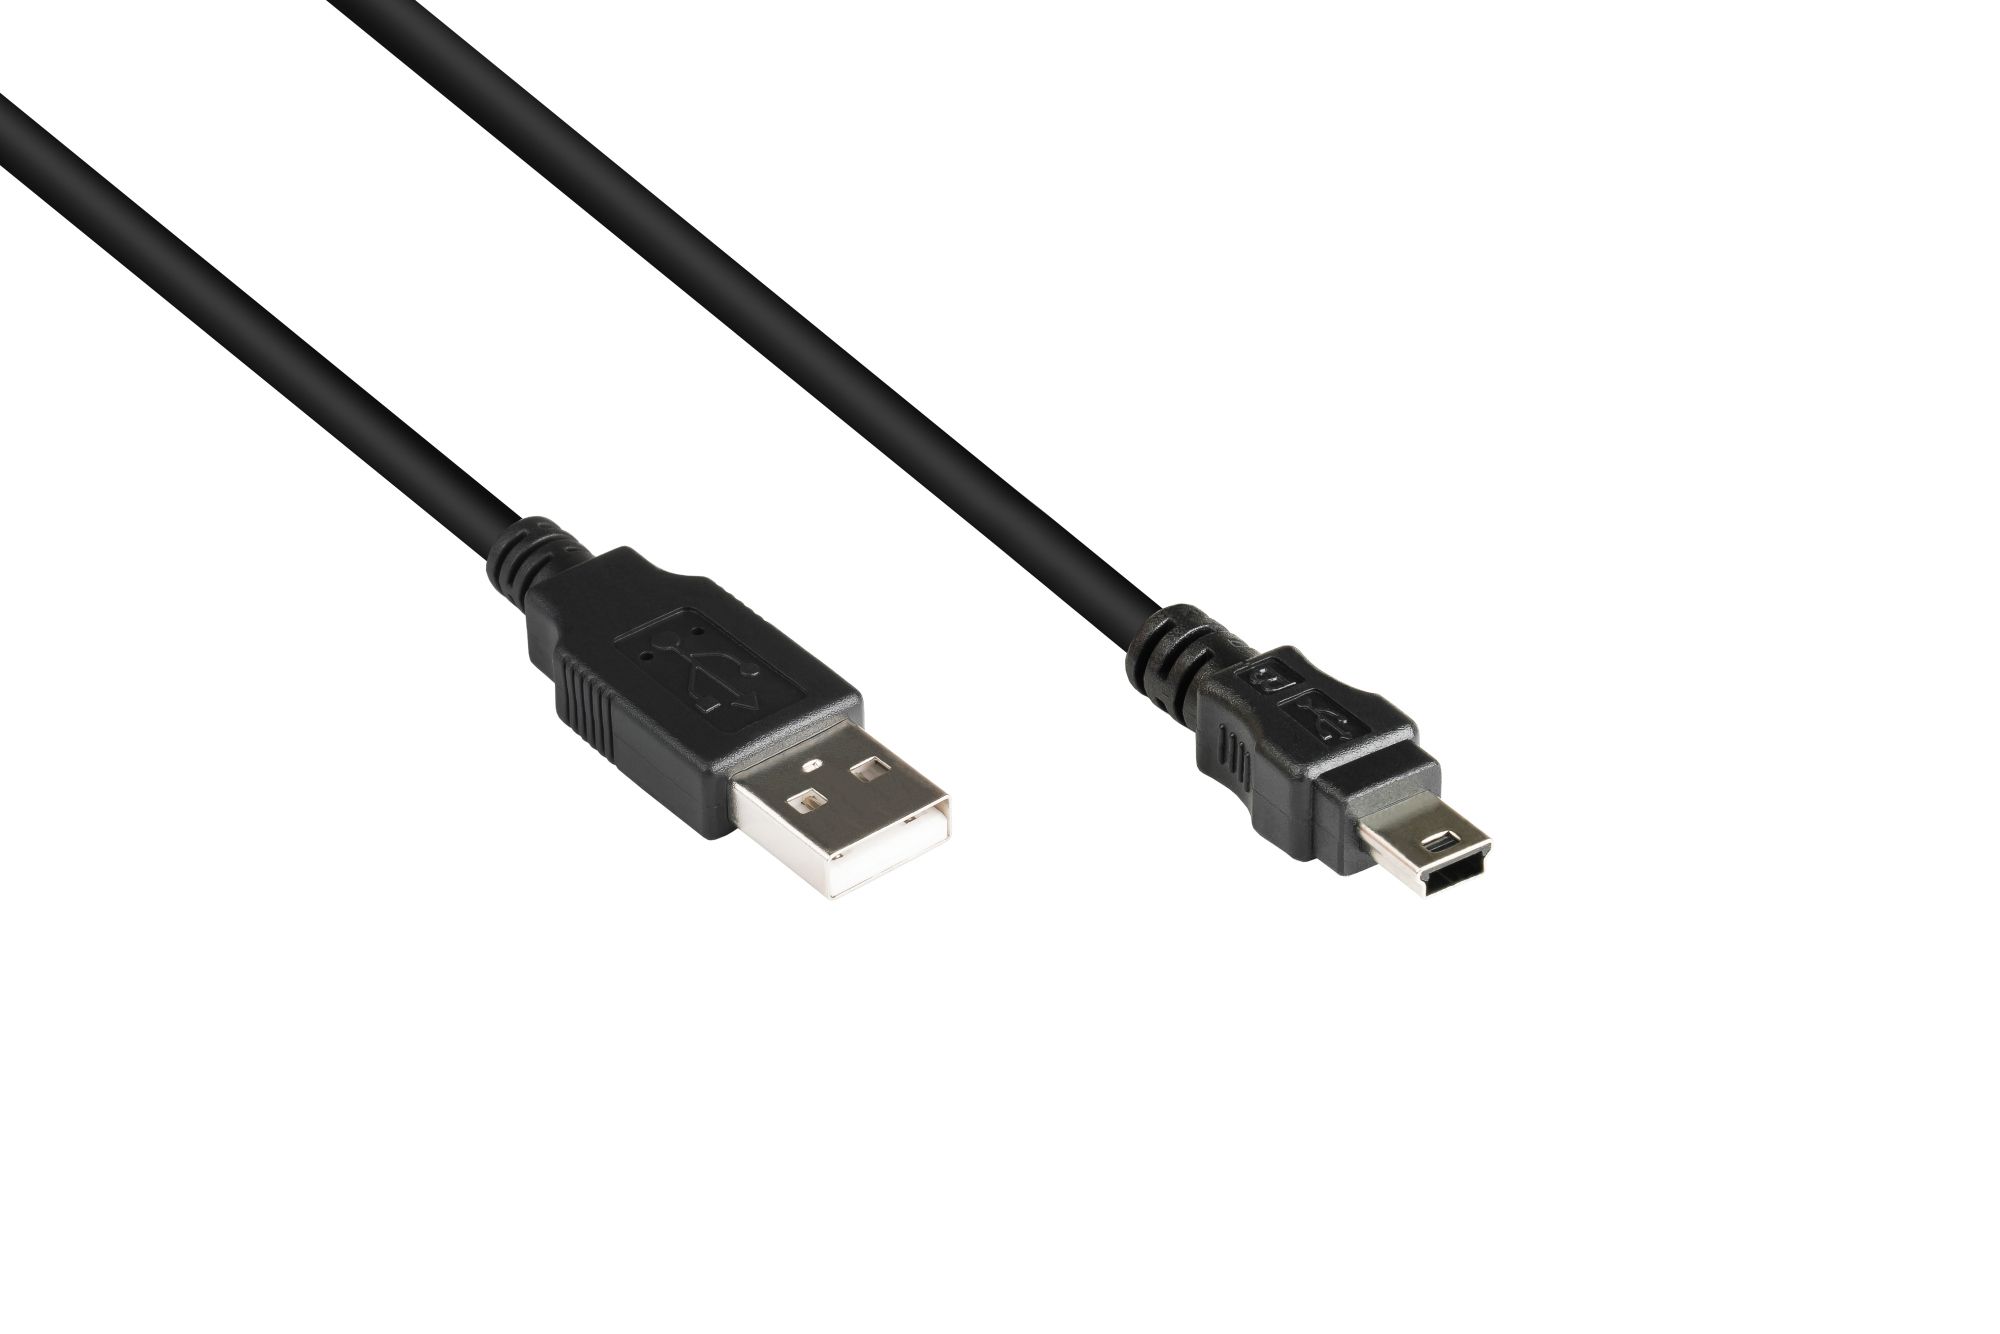 Anschlusskabel USB 2.0 Stecker A an Stecker Mini B 5-pin, schwarz, 3m, Good Connections®